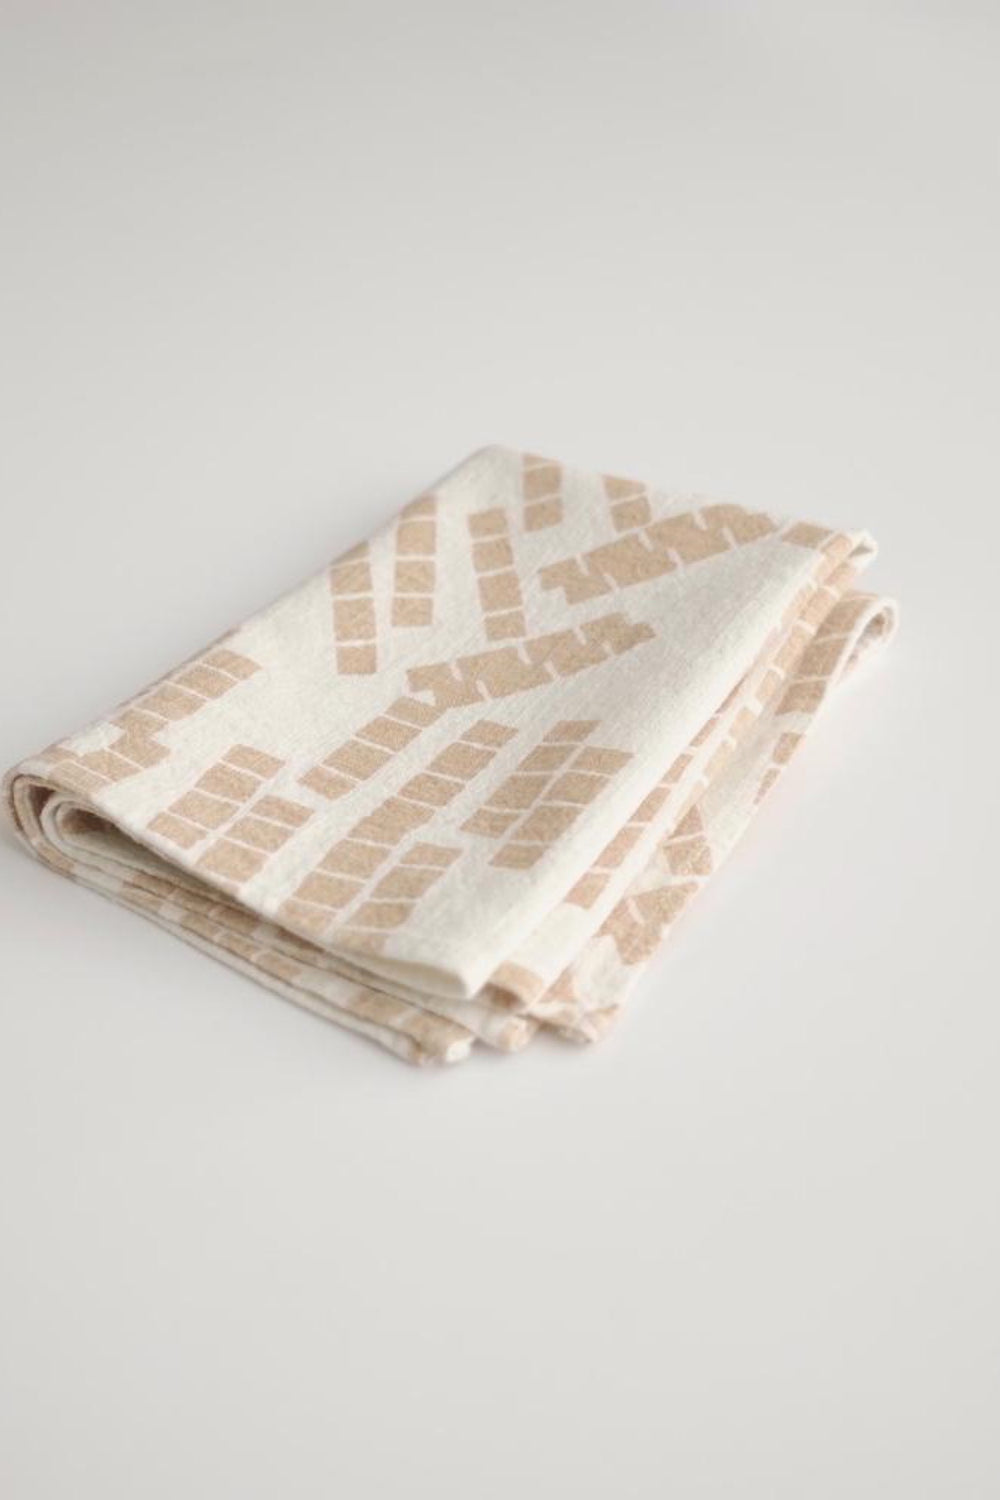 Shell Tiles Tea Towel